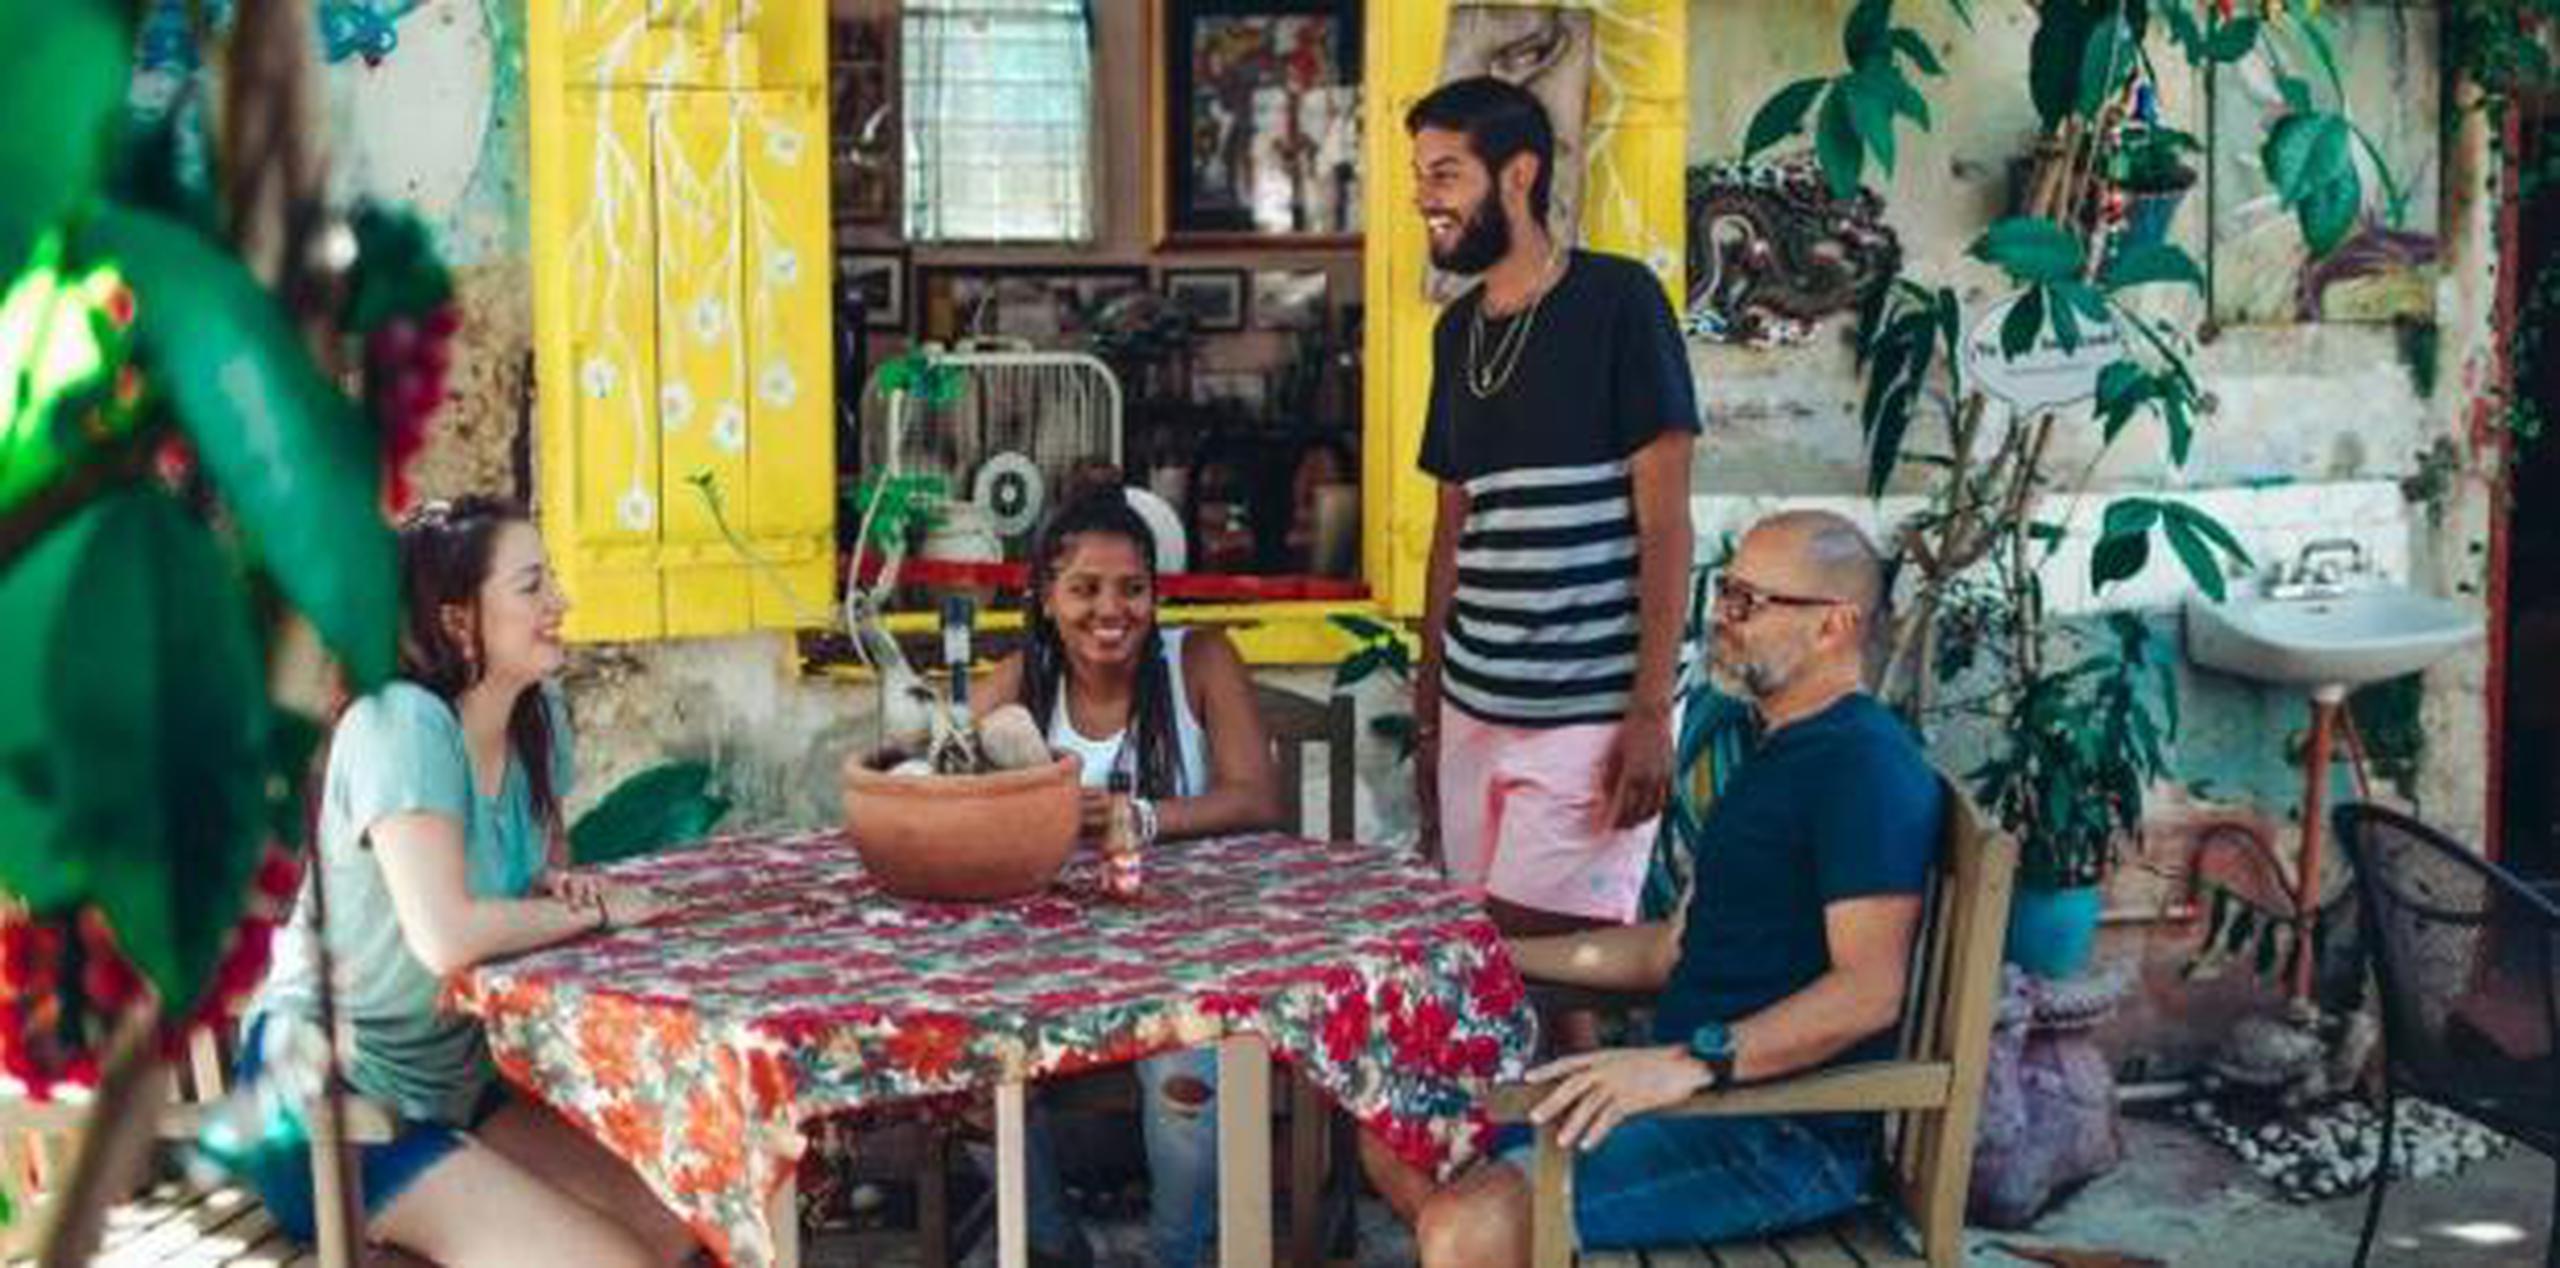 Según Airbnb, Puerto Rico se posicionó en octubre pasado como el segundo destino preferido en el Caribe, superado solo por las Islas Vírgenes estadounidenses. (Airbnb)